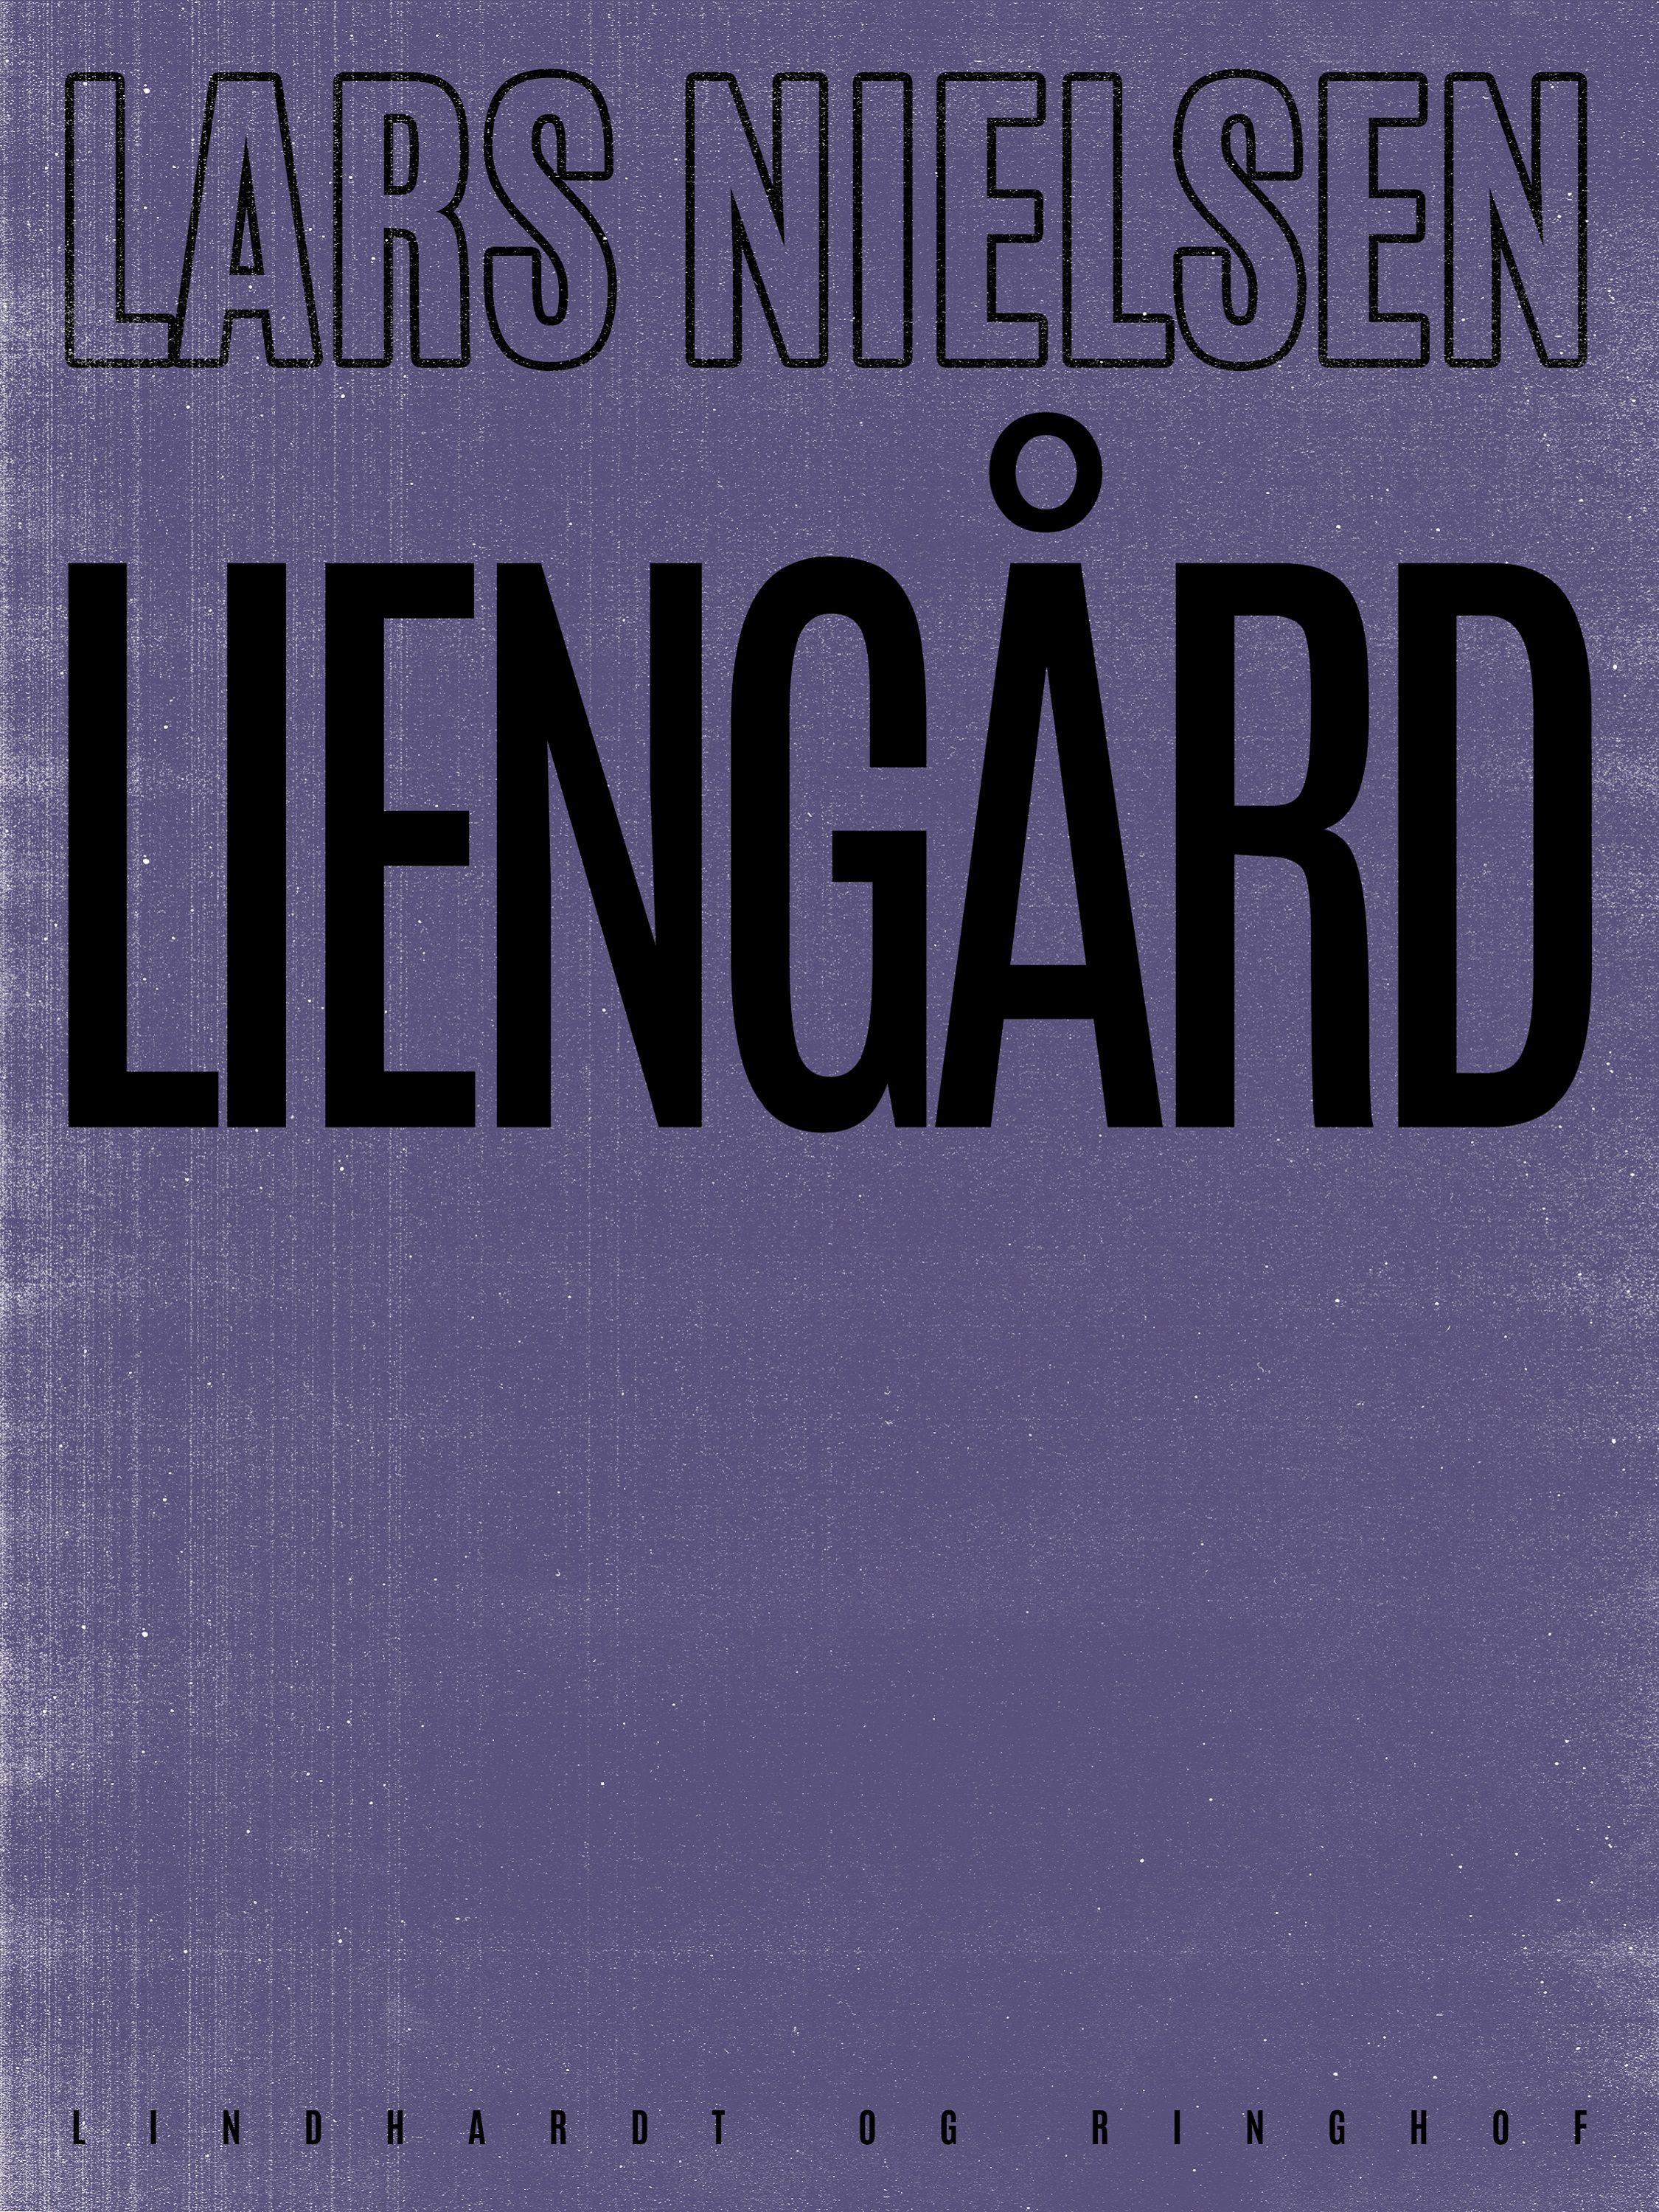 Liengård, ljudbok av Lars Nielsen